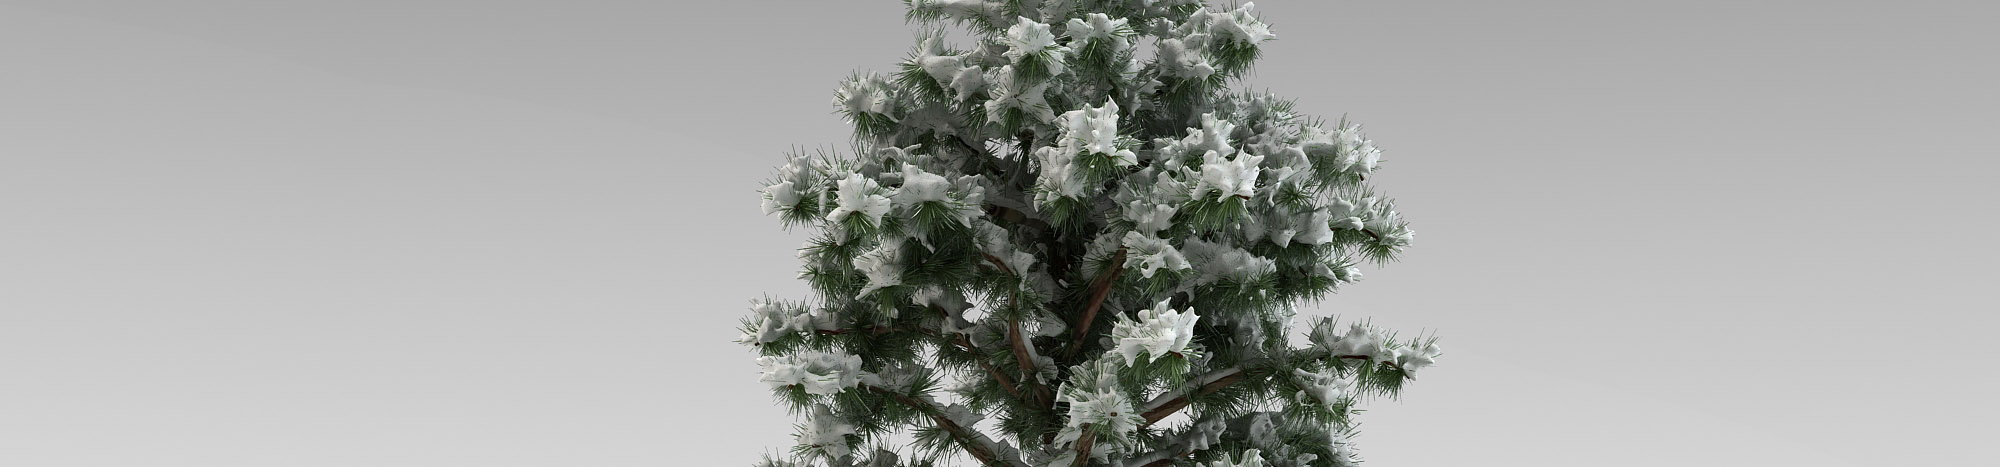 DOSCH DESIGN DOSCH 3D: Winter Trees